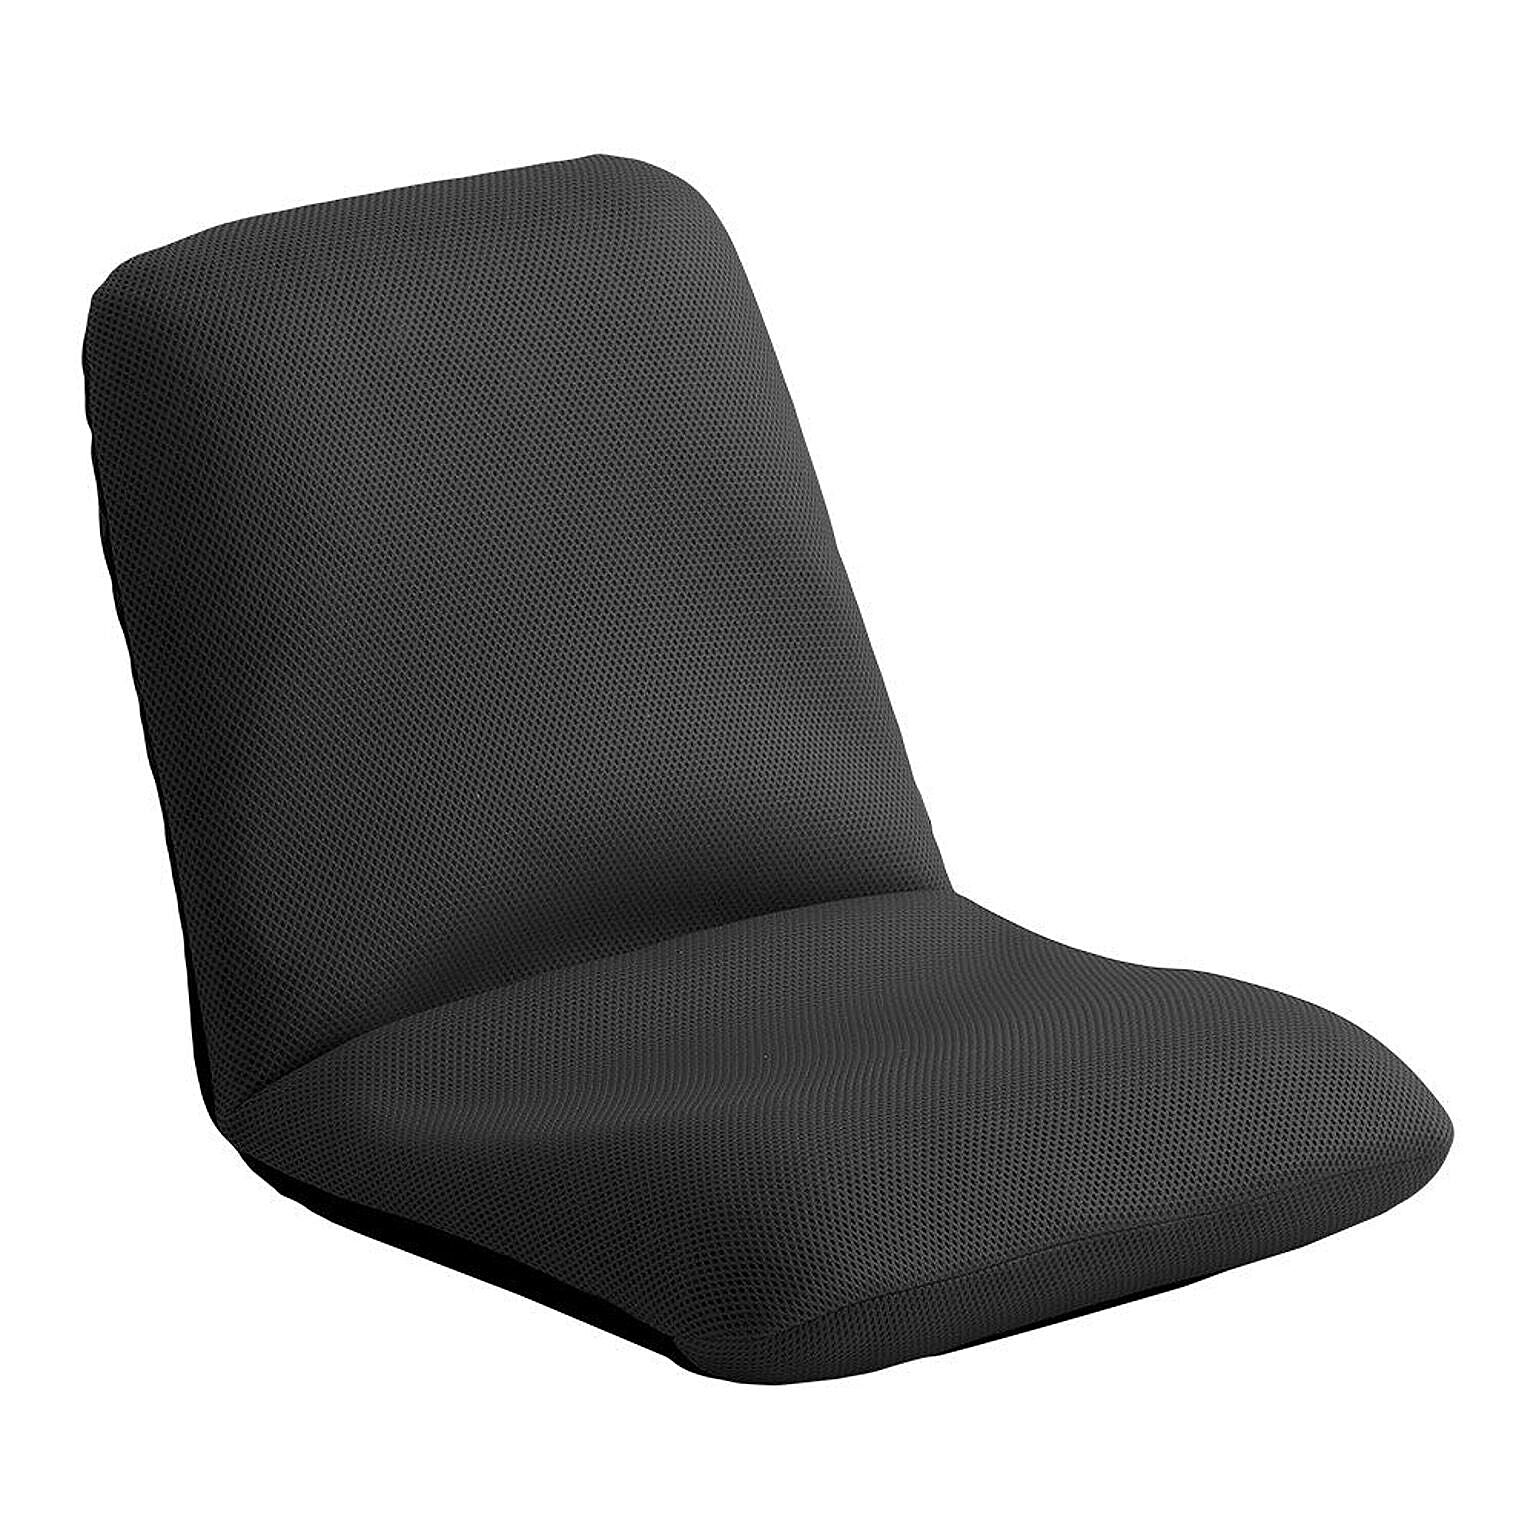 ホームテイスト リーラー コンパクトリクライニング座椅子 Mサイズ ブラック 日本製